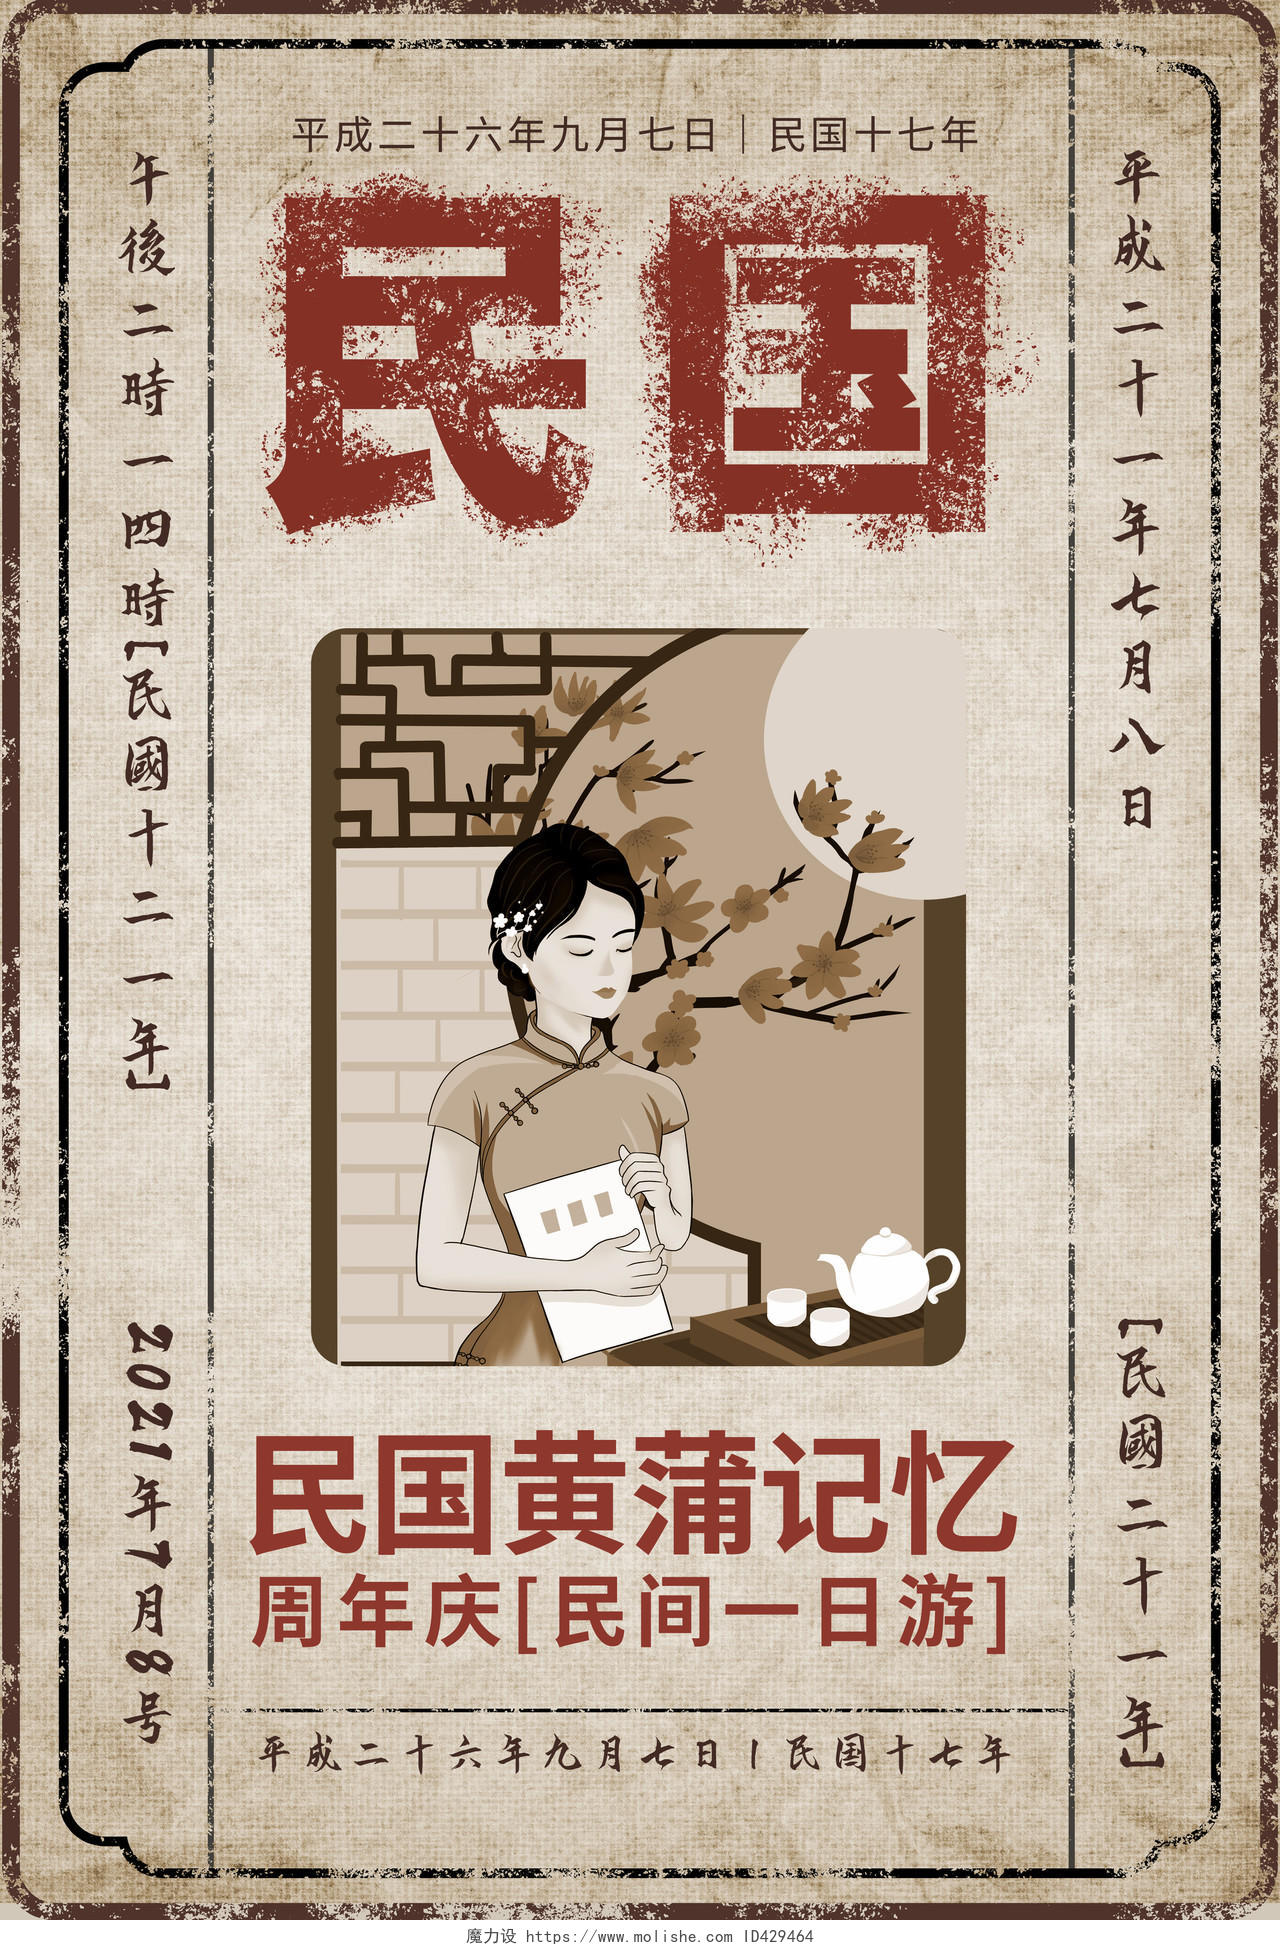 浅褐色复古风格民国黄埔记忆周年庆旅游宣传海报设计老上海复古民国风